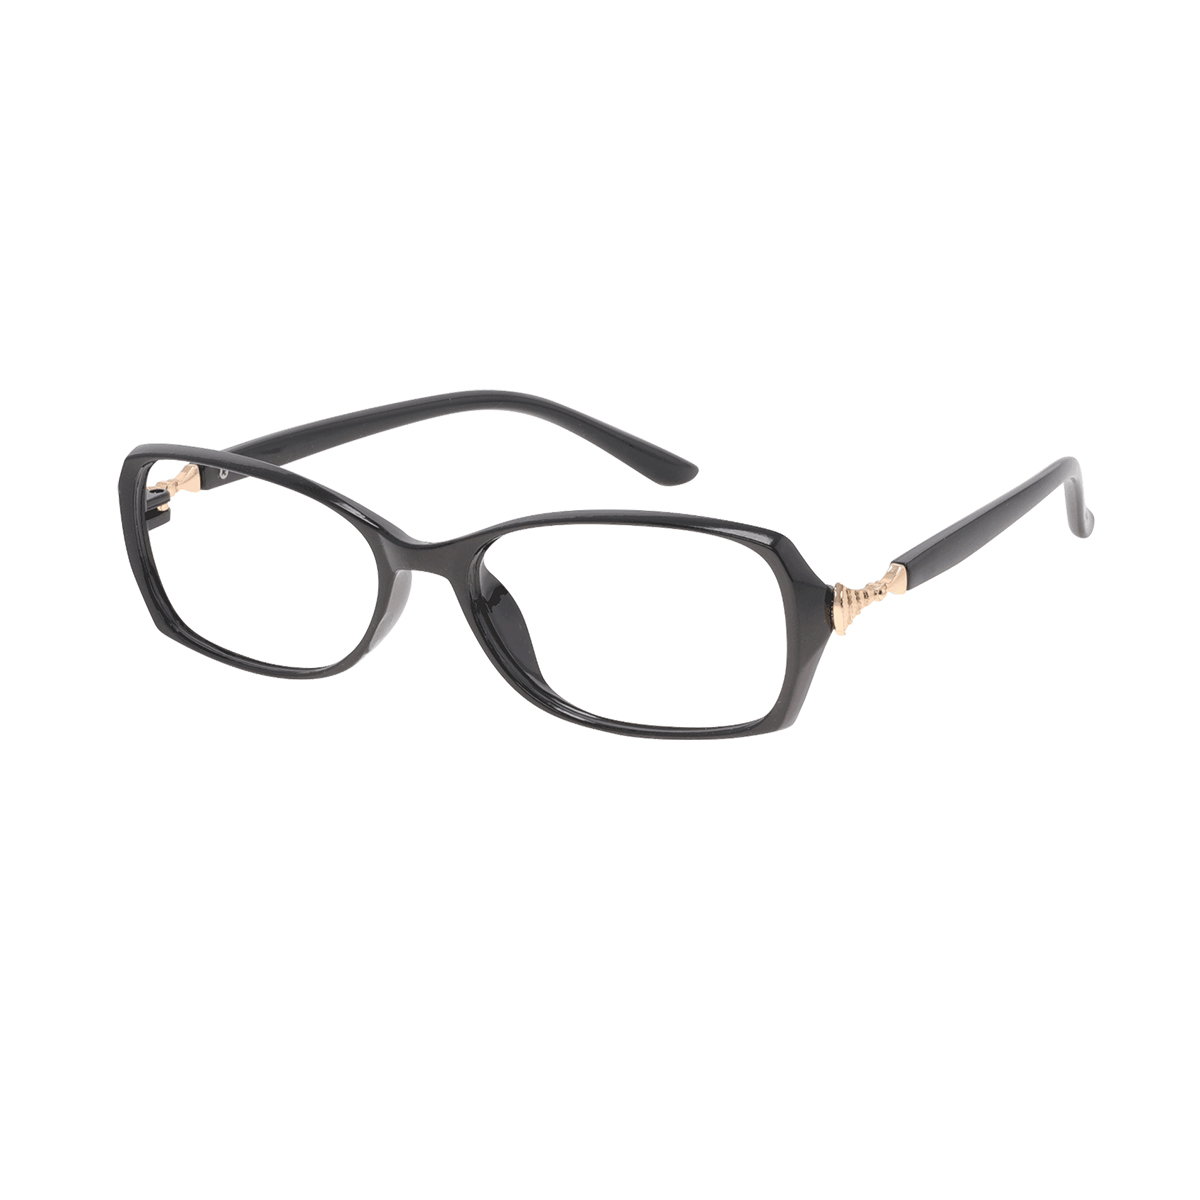 Audsley - Rectangle Black Reading Glasses for Women